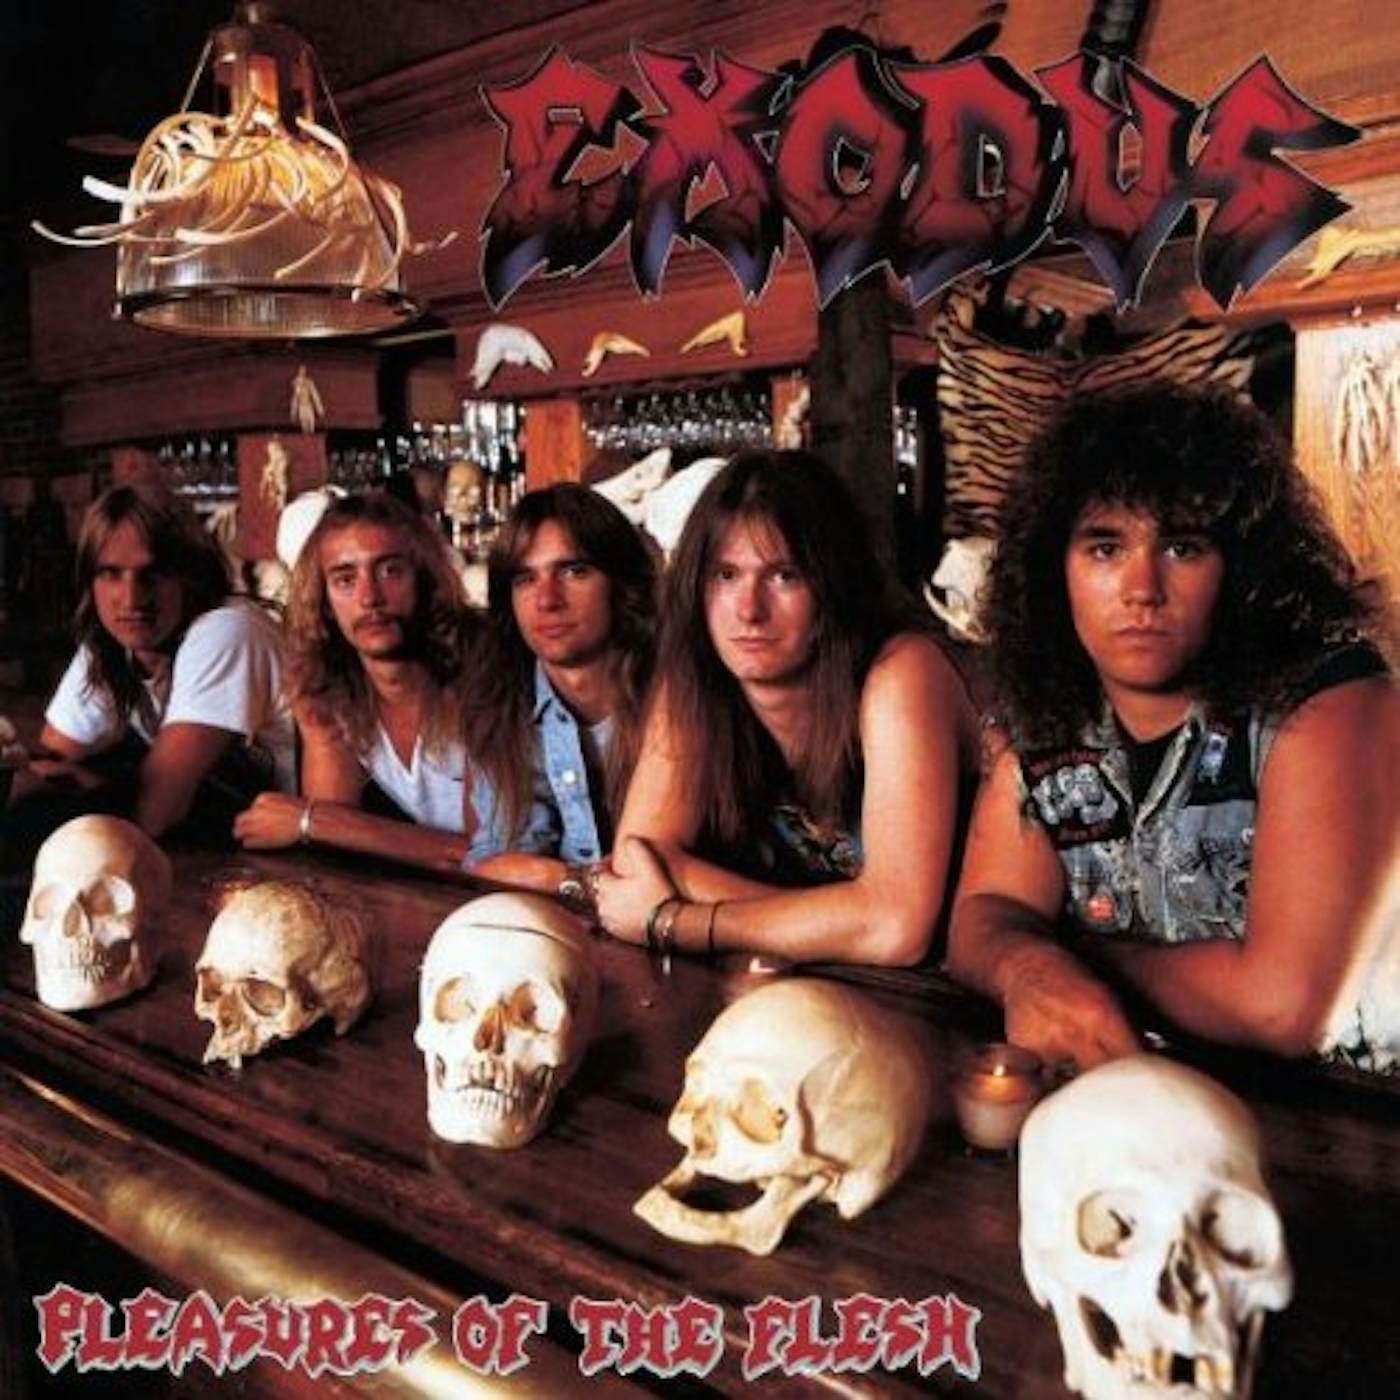 Exodus Pleasures of the Flesh Vinyl Record